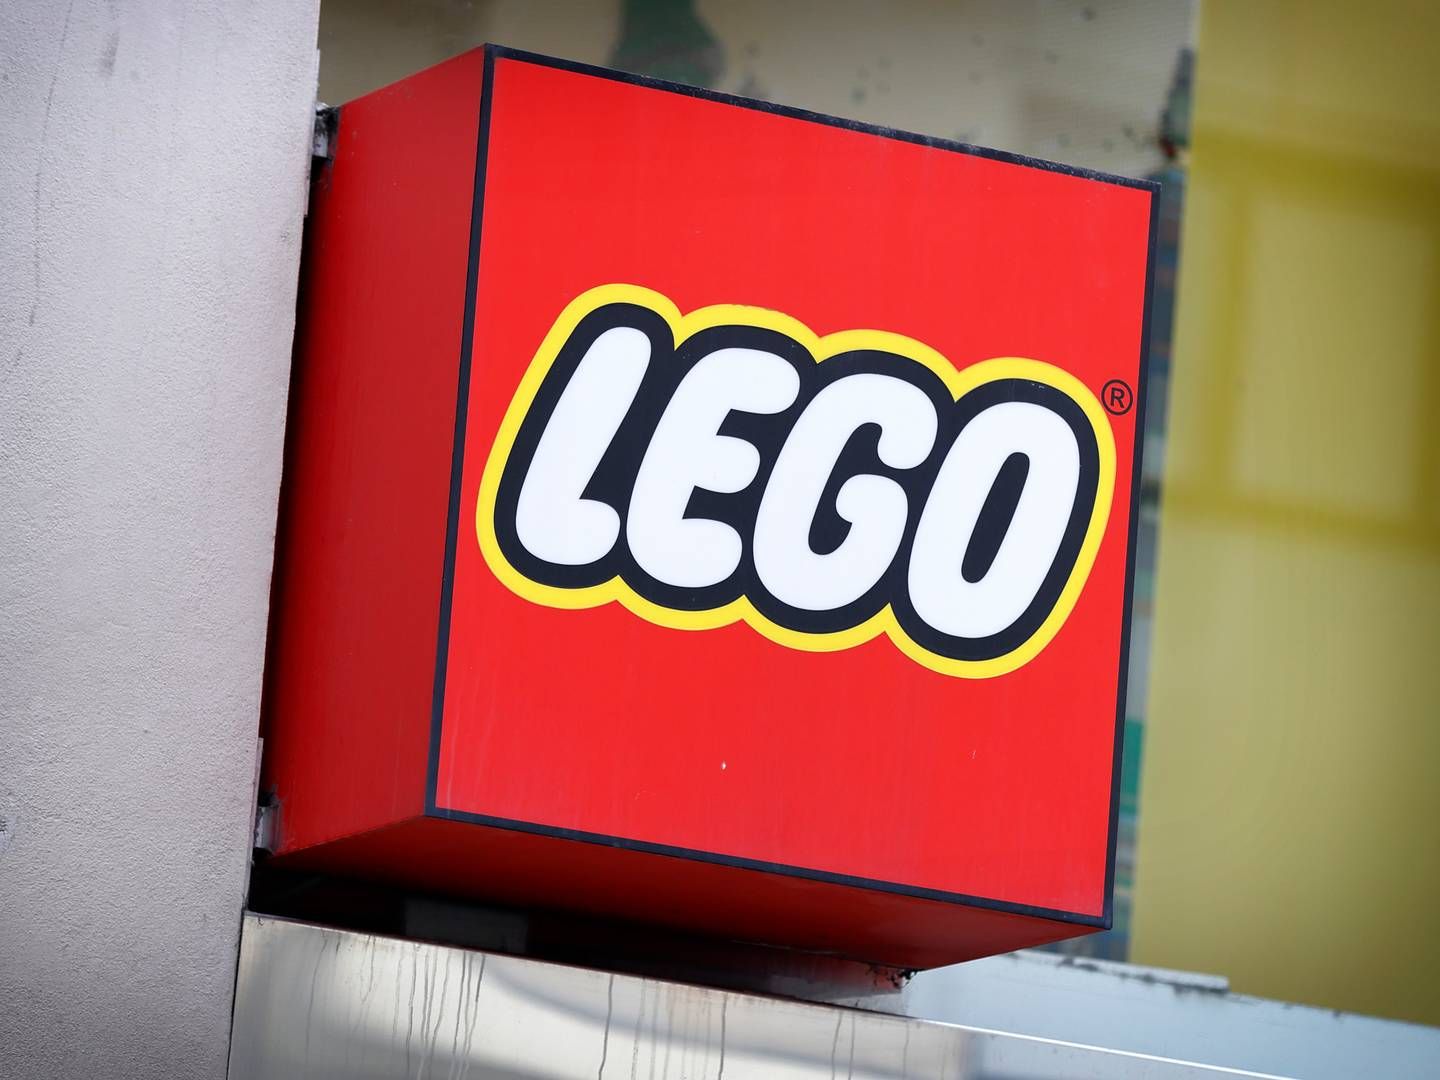 Legoklodsernes brandværdi steg til 55,2 mia. kr. sidste år, ifølge opgørelse fra Brand Finance. | Foto: Jens Dresling